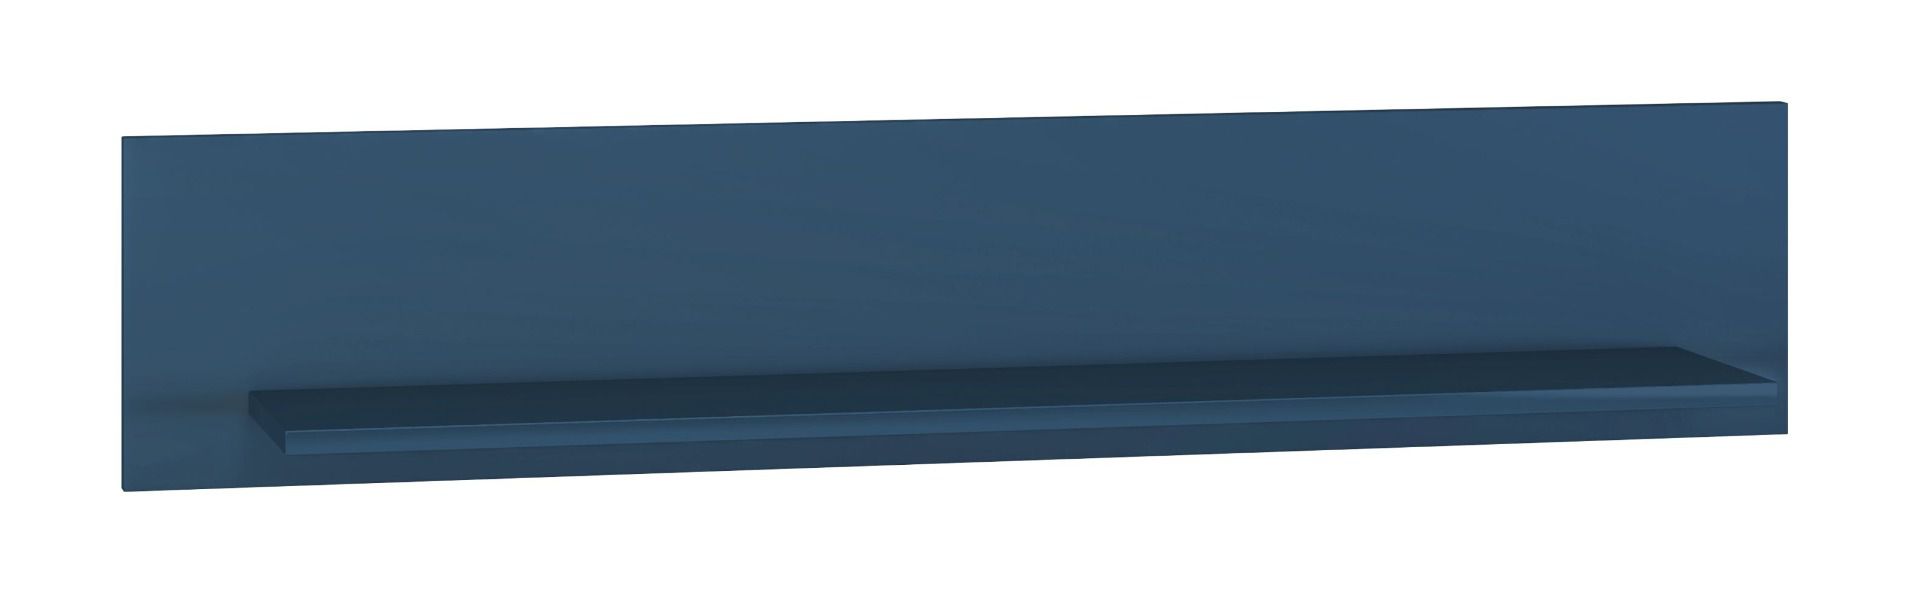 Étagère suspendue Kumpula 08, couleur bleu foncé - Dimensions : 23 x 120 x 22 cm (H x L x P)